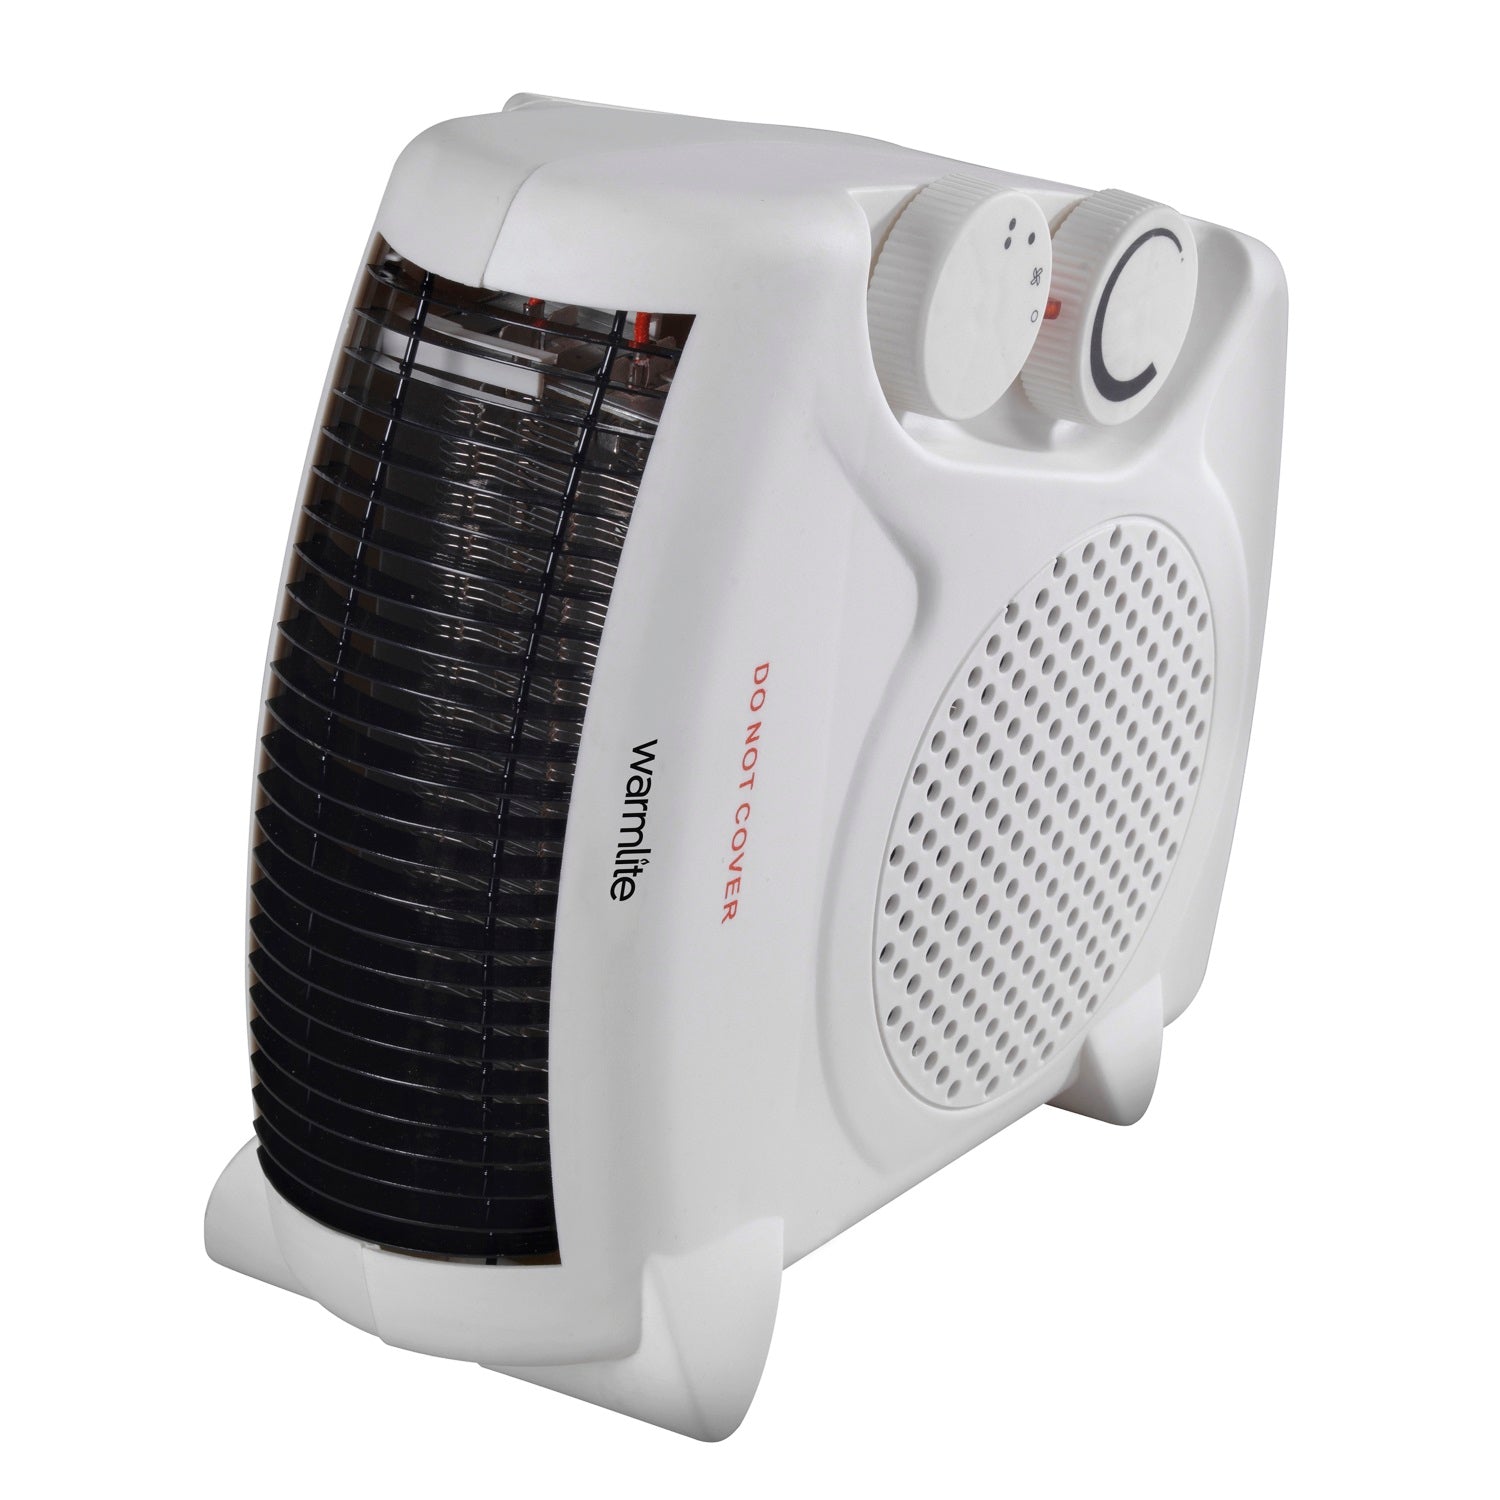 Warmlite WL44001 Fan Heater 2000w - Premium Fan Heaters from warmlite - Just $16.95! Shop now at W Hurst & Son (IW) Ltd